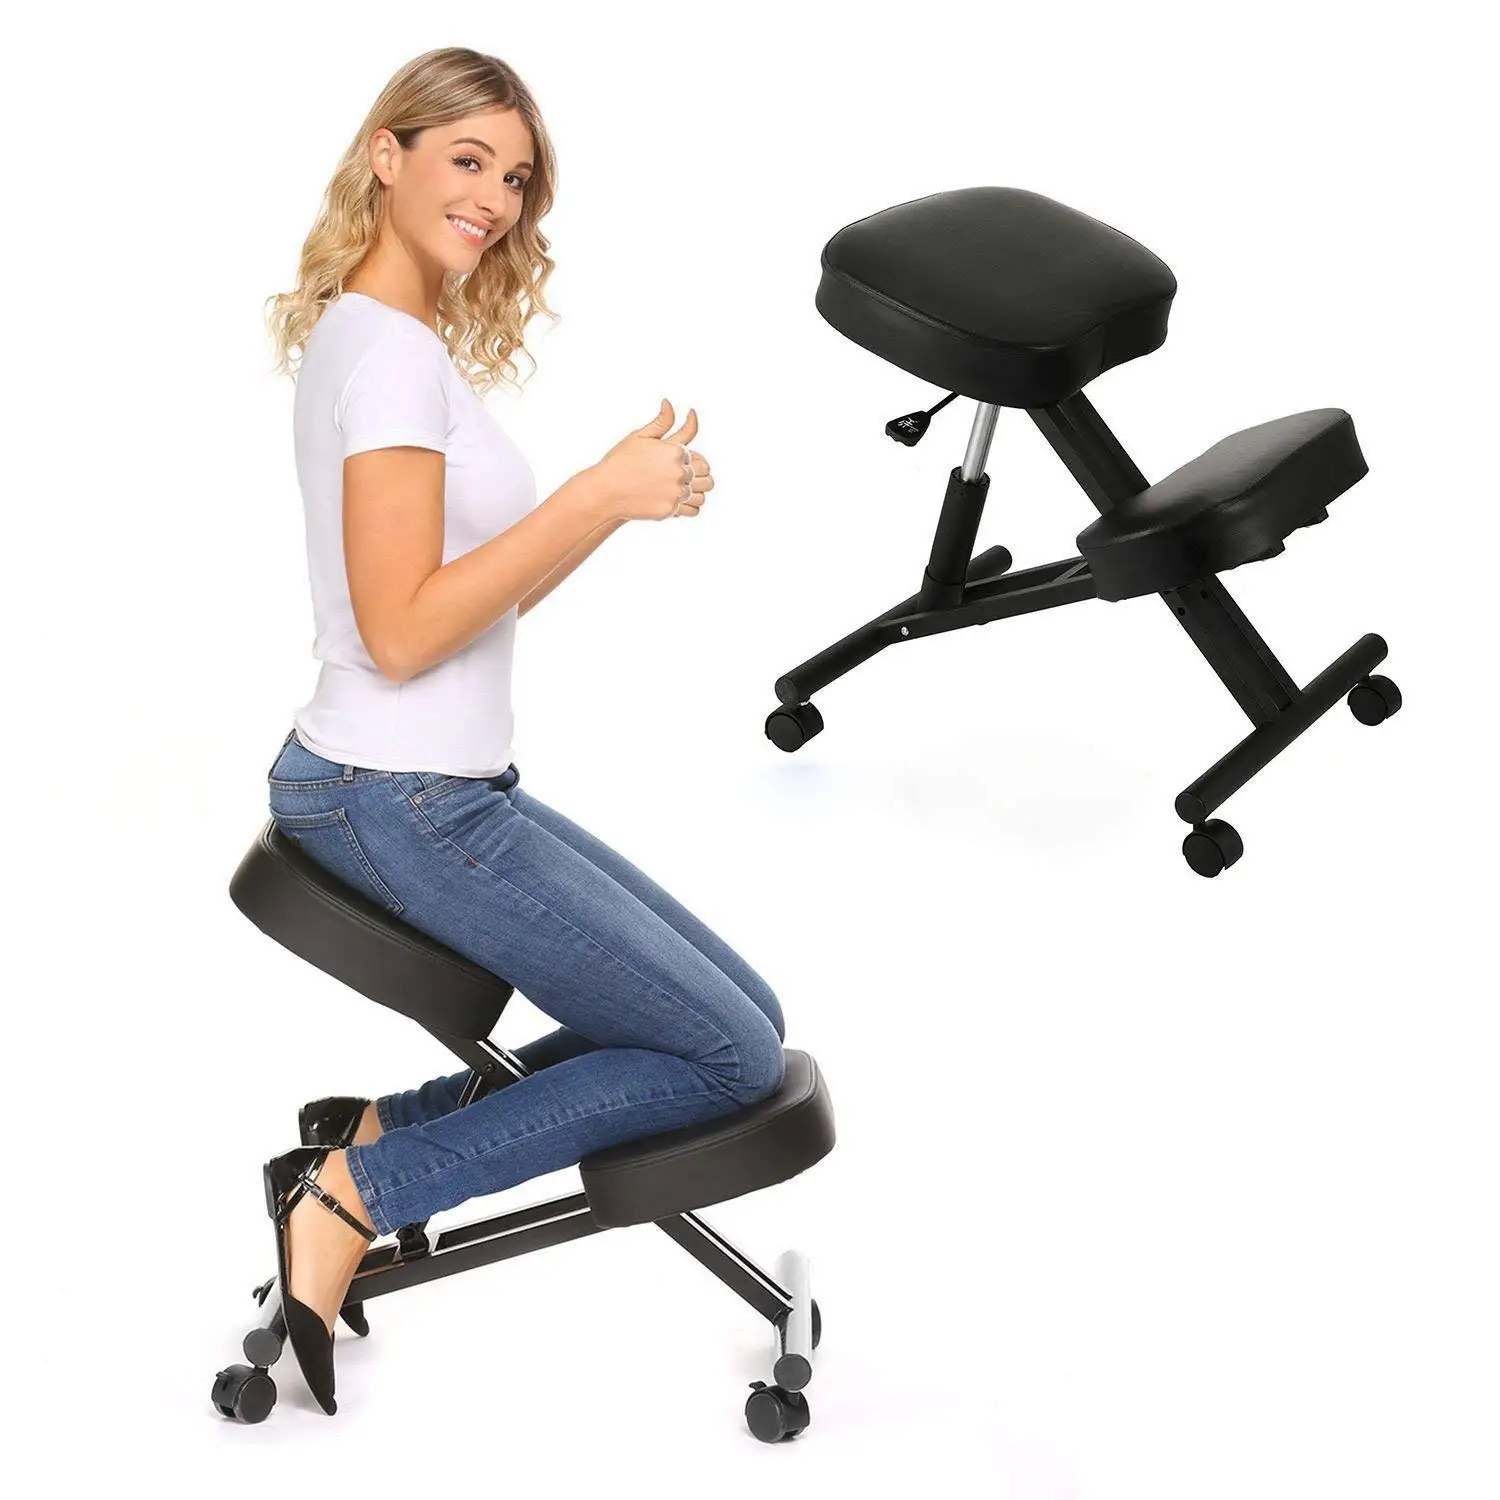 Buy Mophorn Ergonomic Kneeling Chair Height Adjustable Stool Kneeling